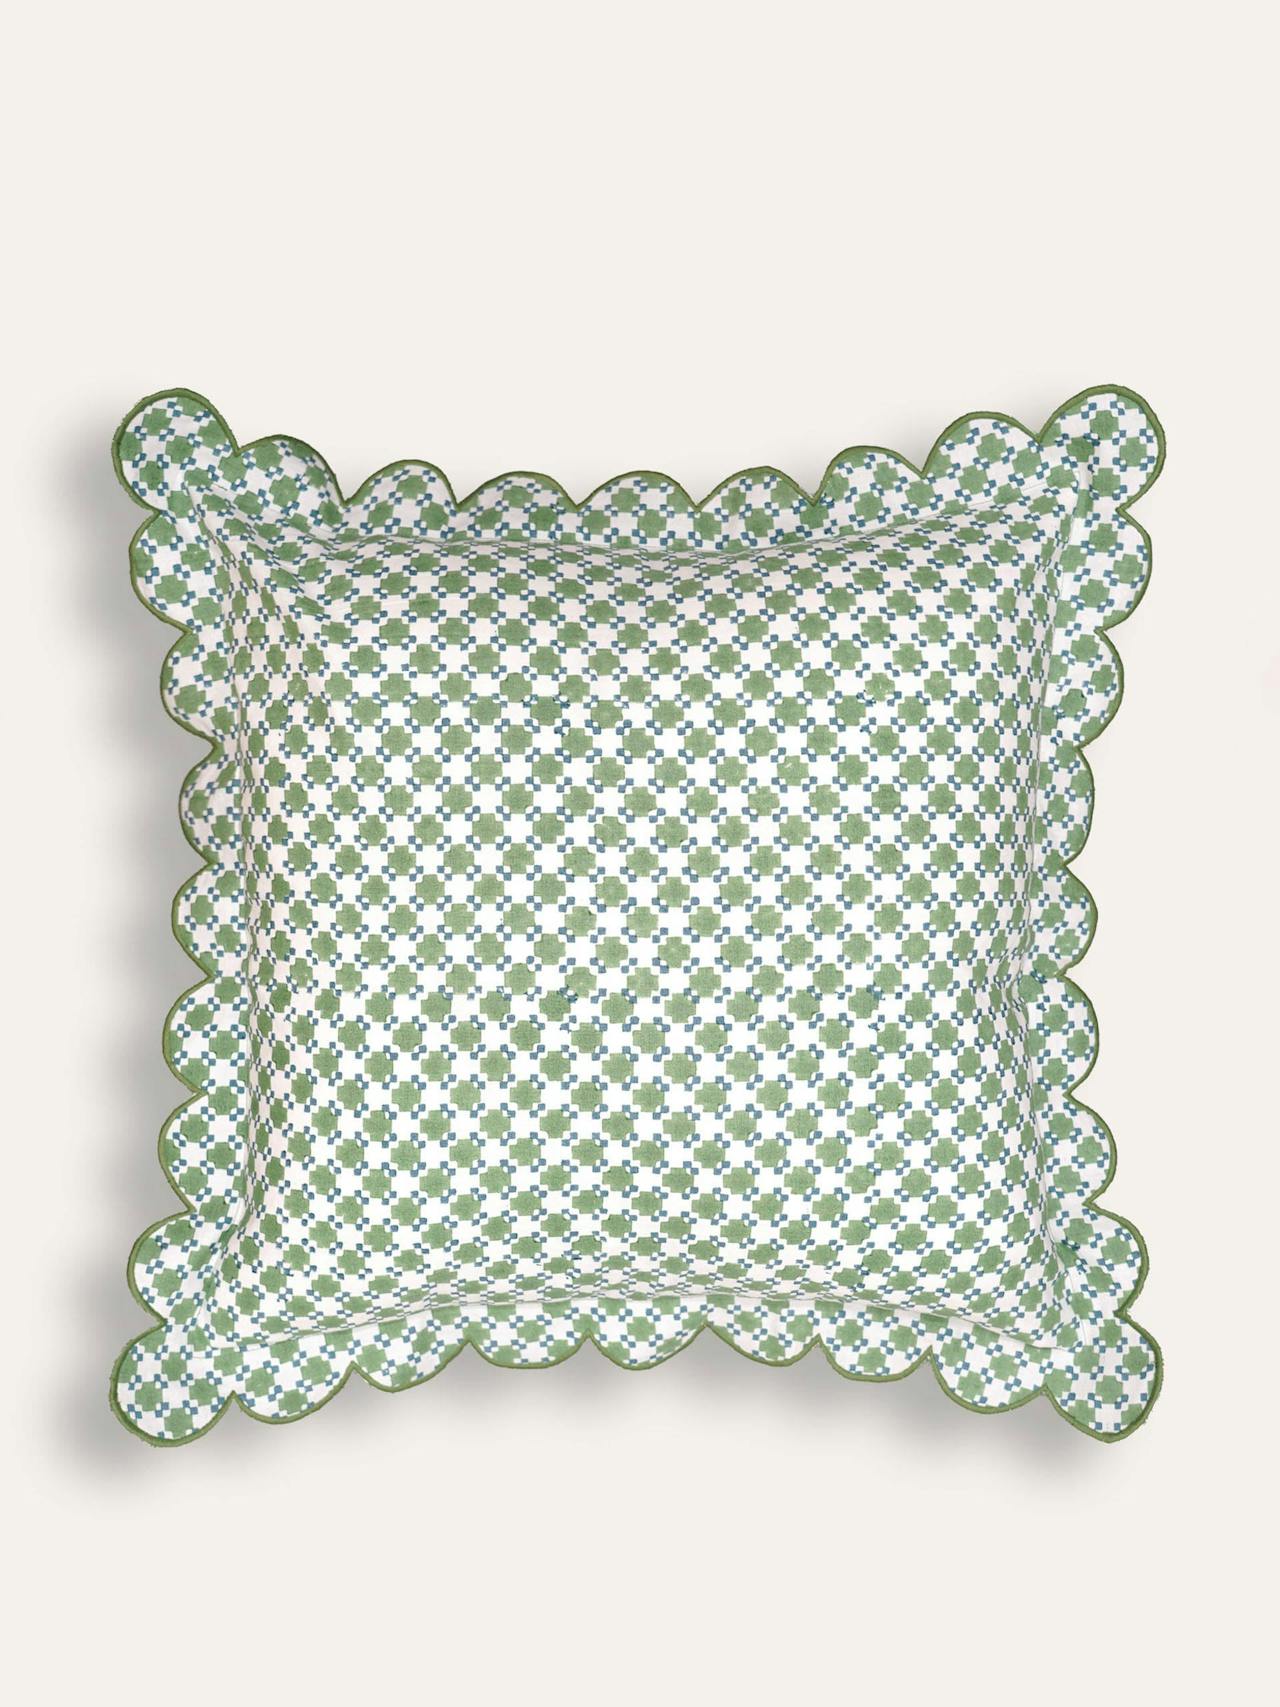 Green Capilla block print cushion